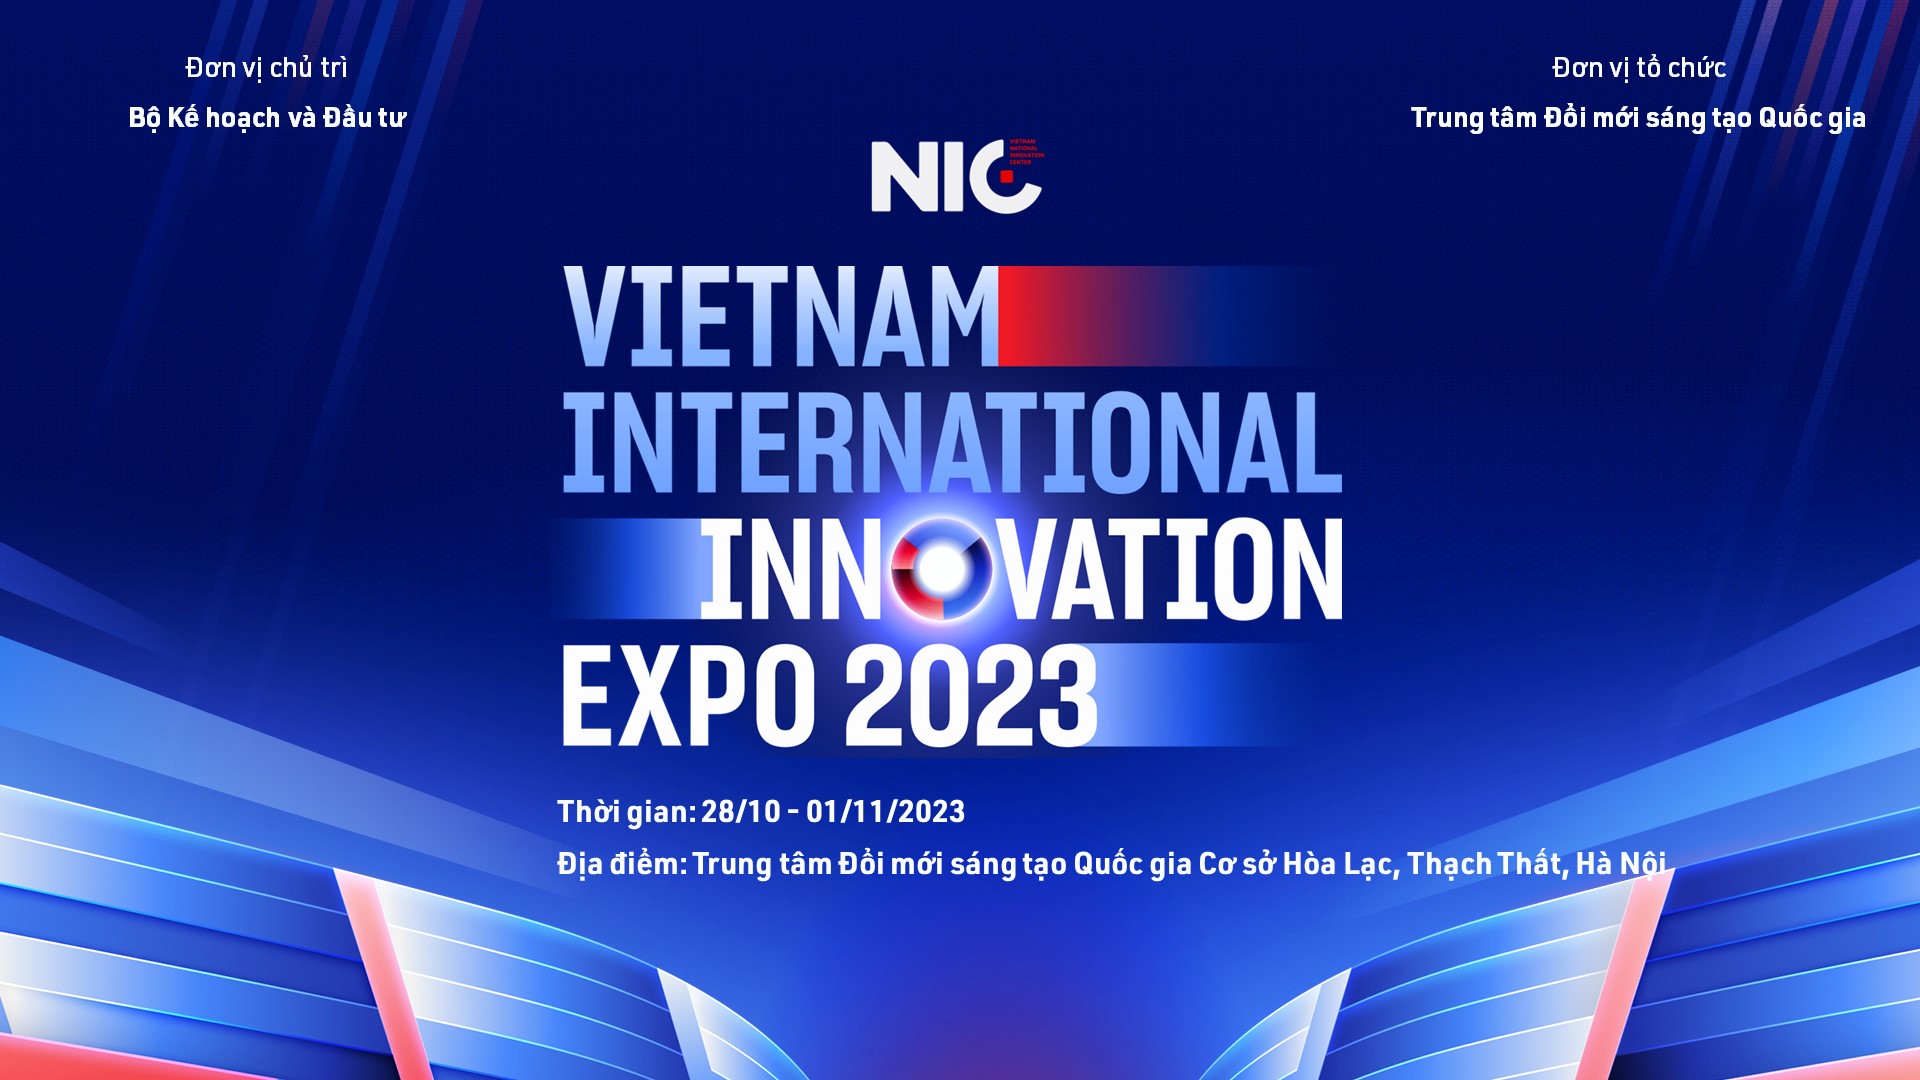 Vietnam International Innovation Expo 2023